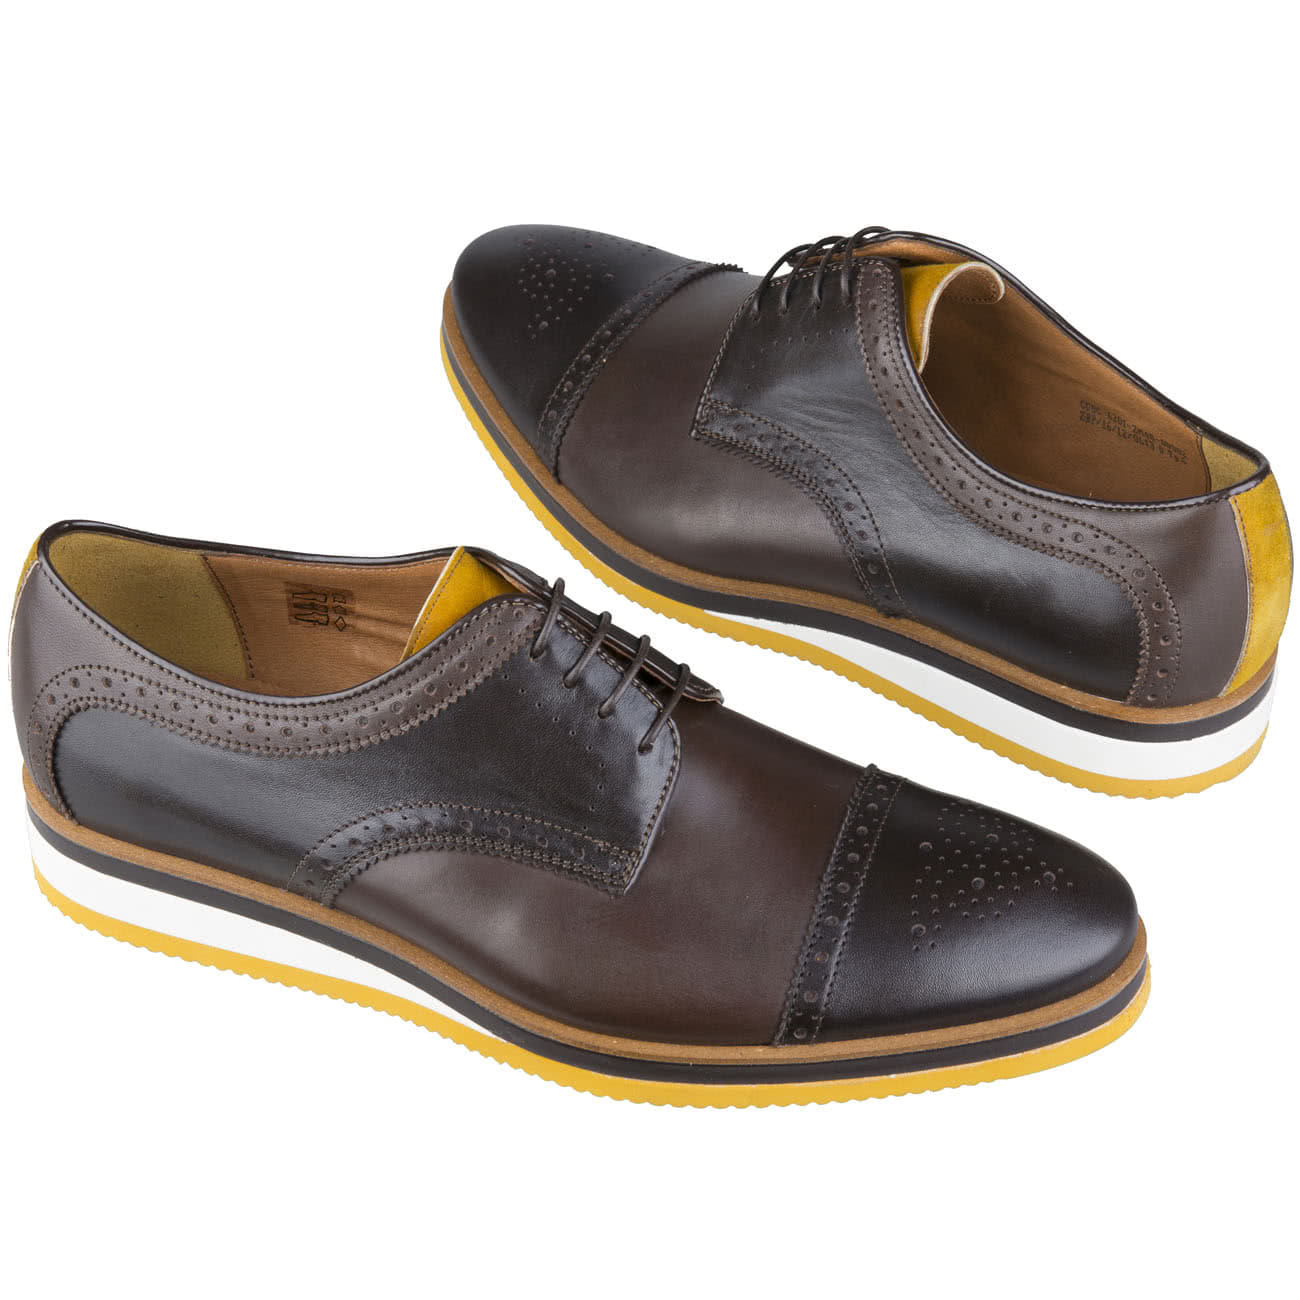 Кожаные мужские туфли на шнурках с белой подошвой и желтыми вставкамикупить в интернет магазине Kwinto